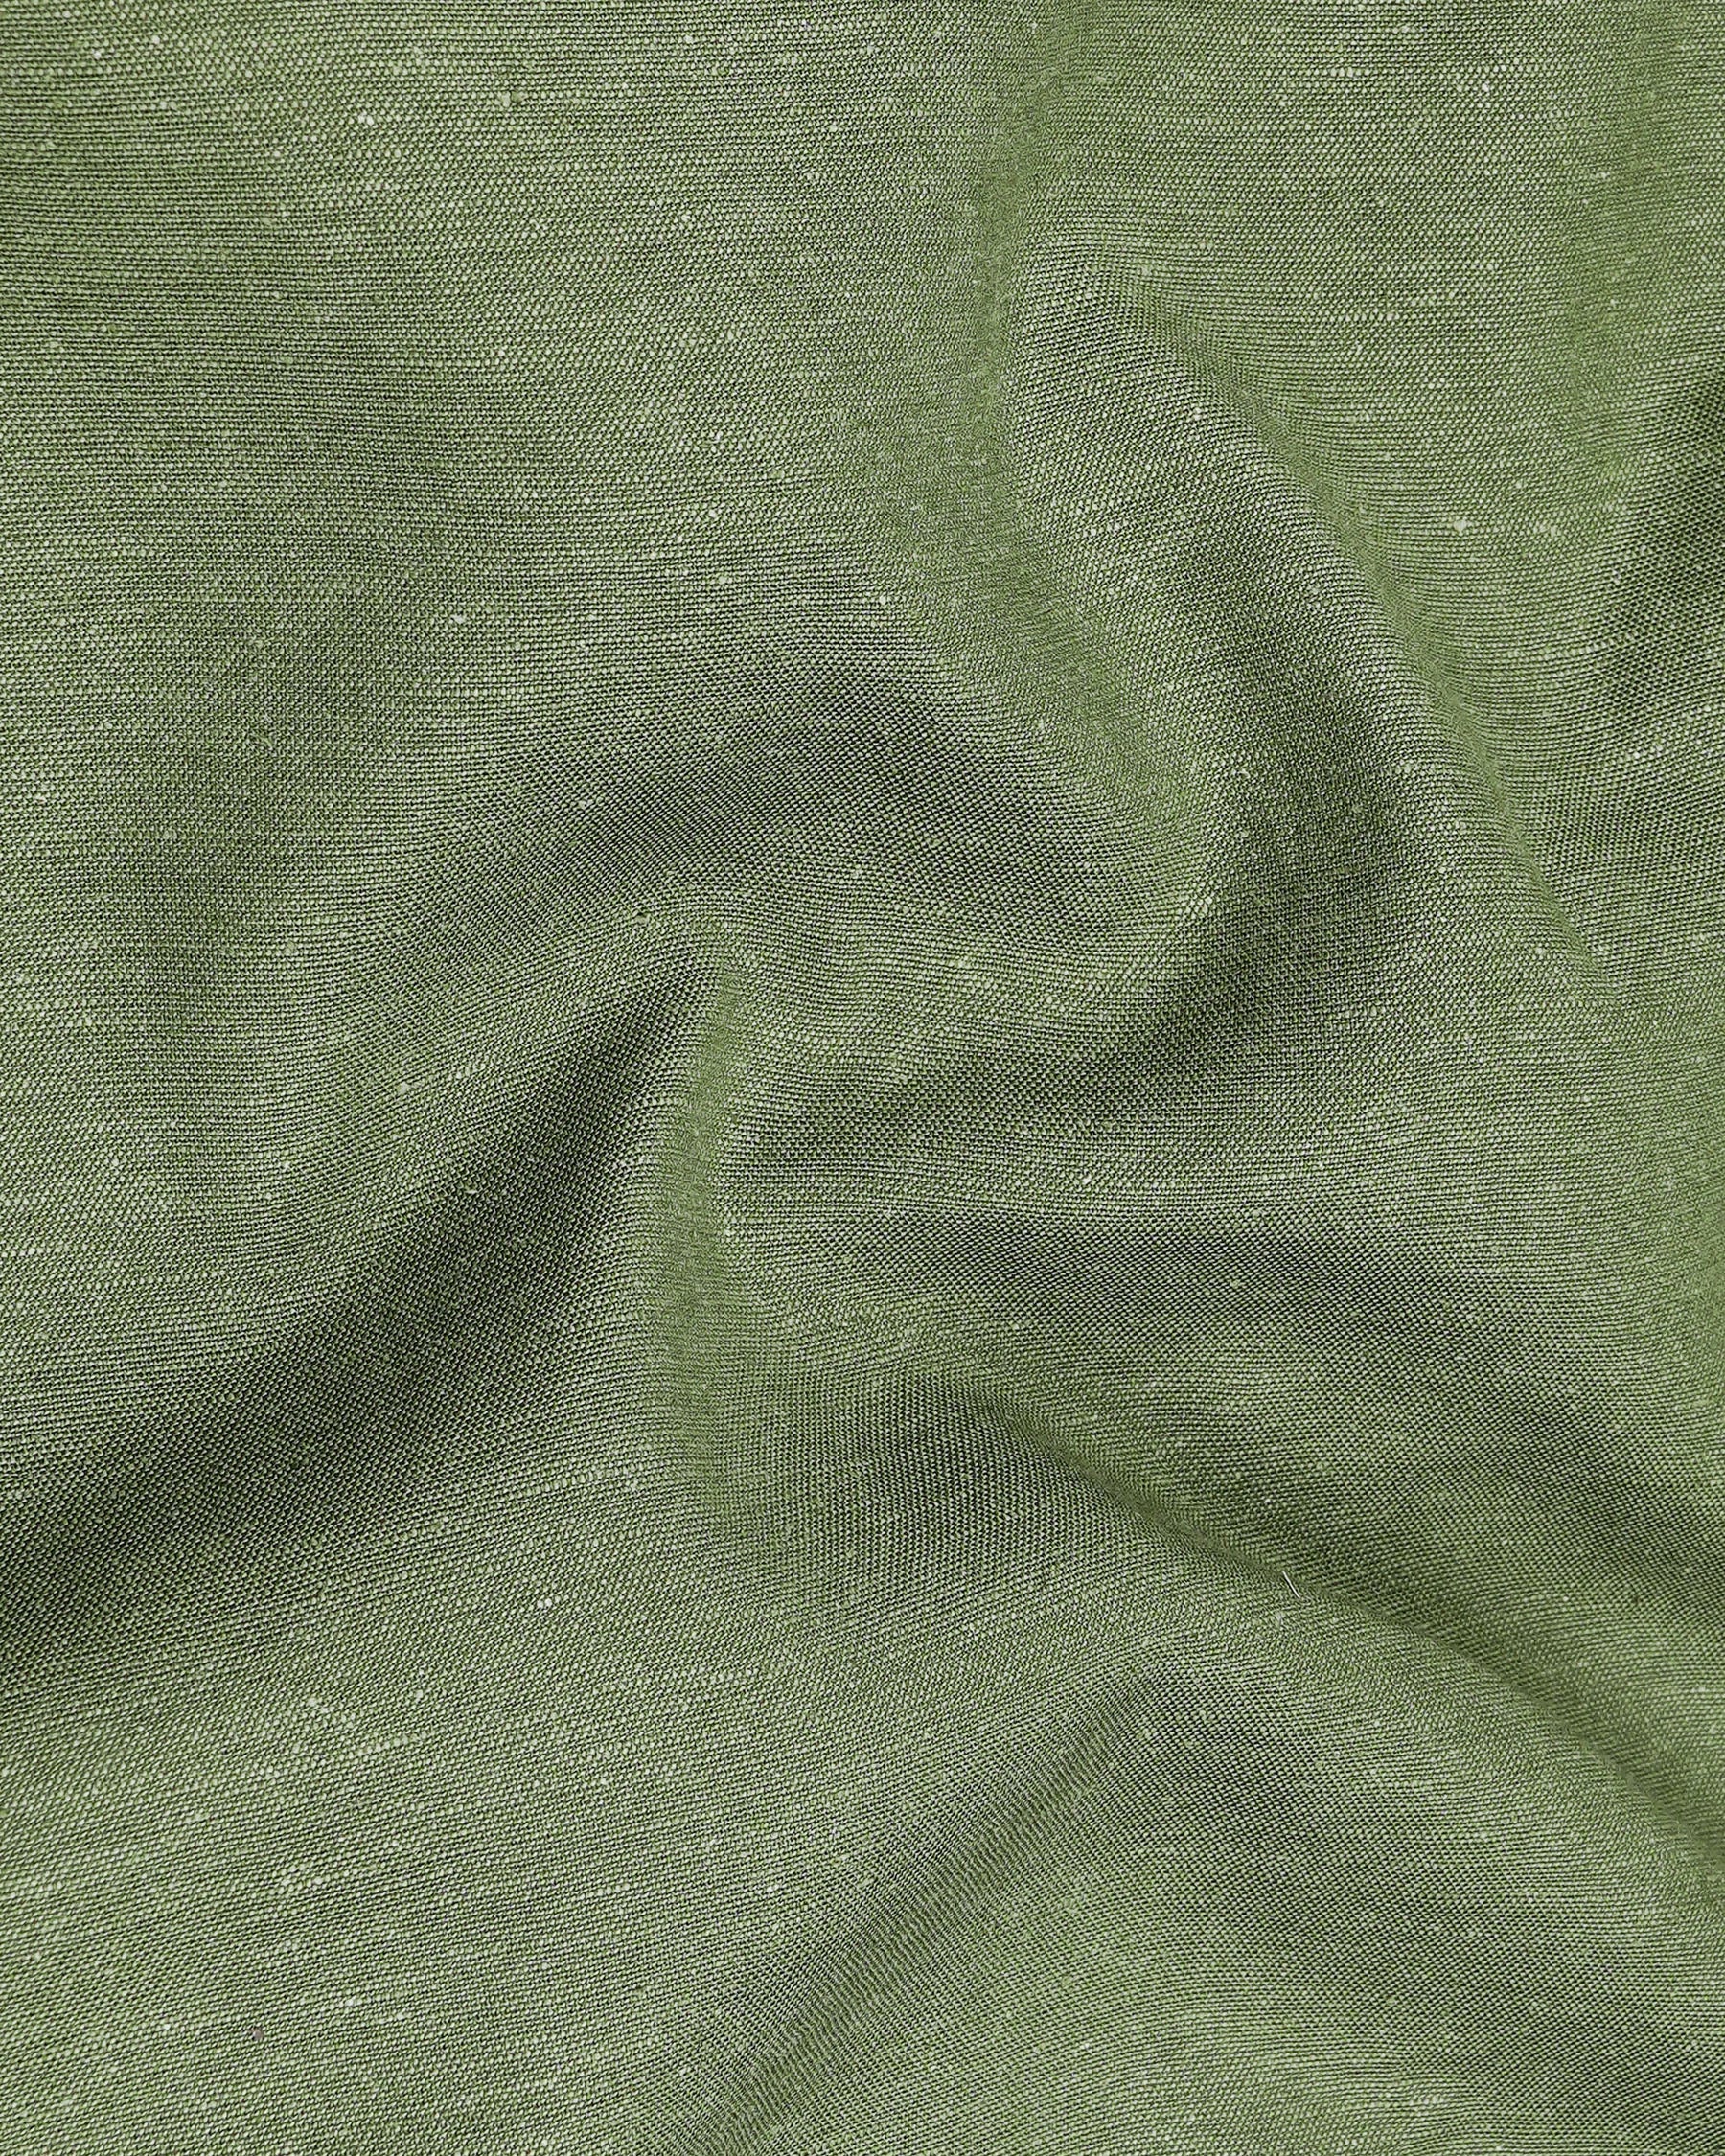 Highland Green Luxurious Linen Shirt 7960-M-38,7960-M-H-38,7960-M-39,7960-M-H-39,7960-M-40,7960-M-H-40,7960-M-42,7960-M-H-42,7960-M-44,7960-M-H-44,7960-M-46,7960-M-H-46,7960-M-48,7960-M-H-48,7960-M-50,7960-M-H-50,7960-M-52,7960-M-H-52